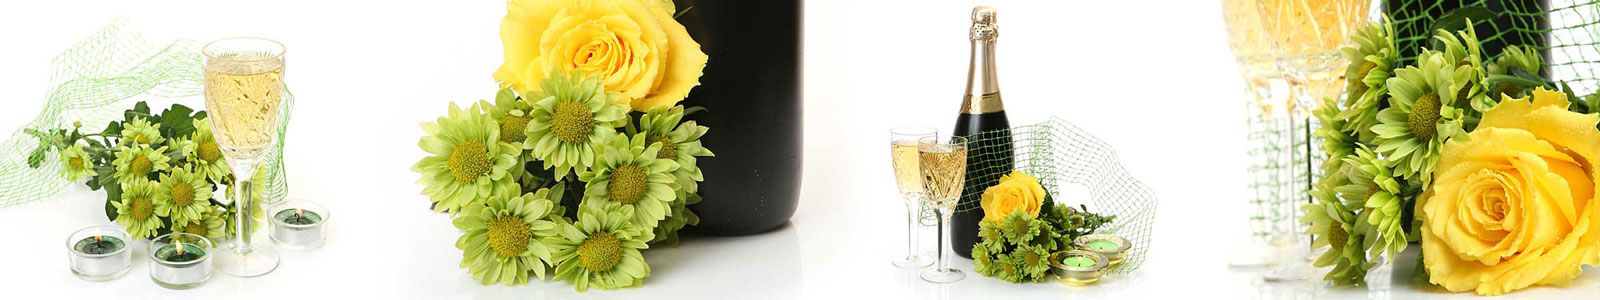 №3220 - Розы, шампанское и хризантемы